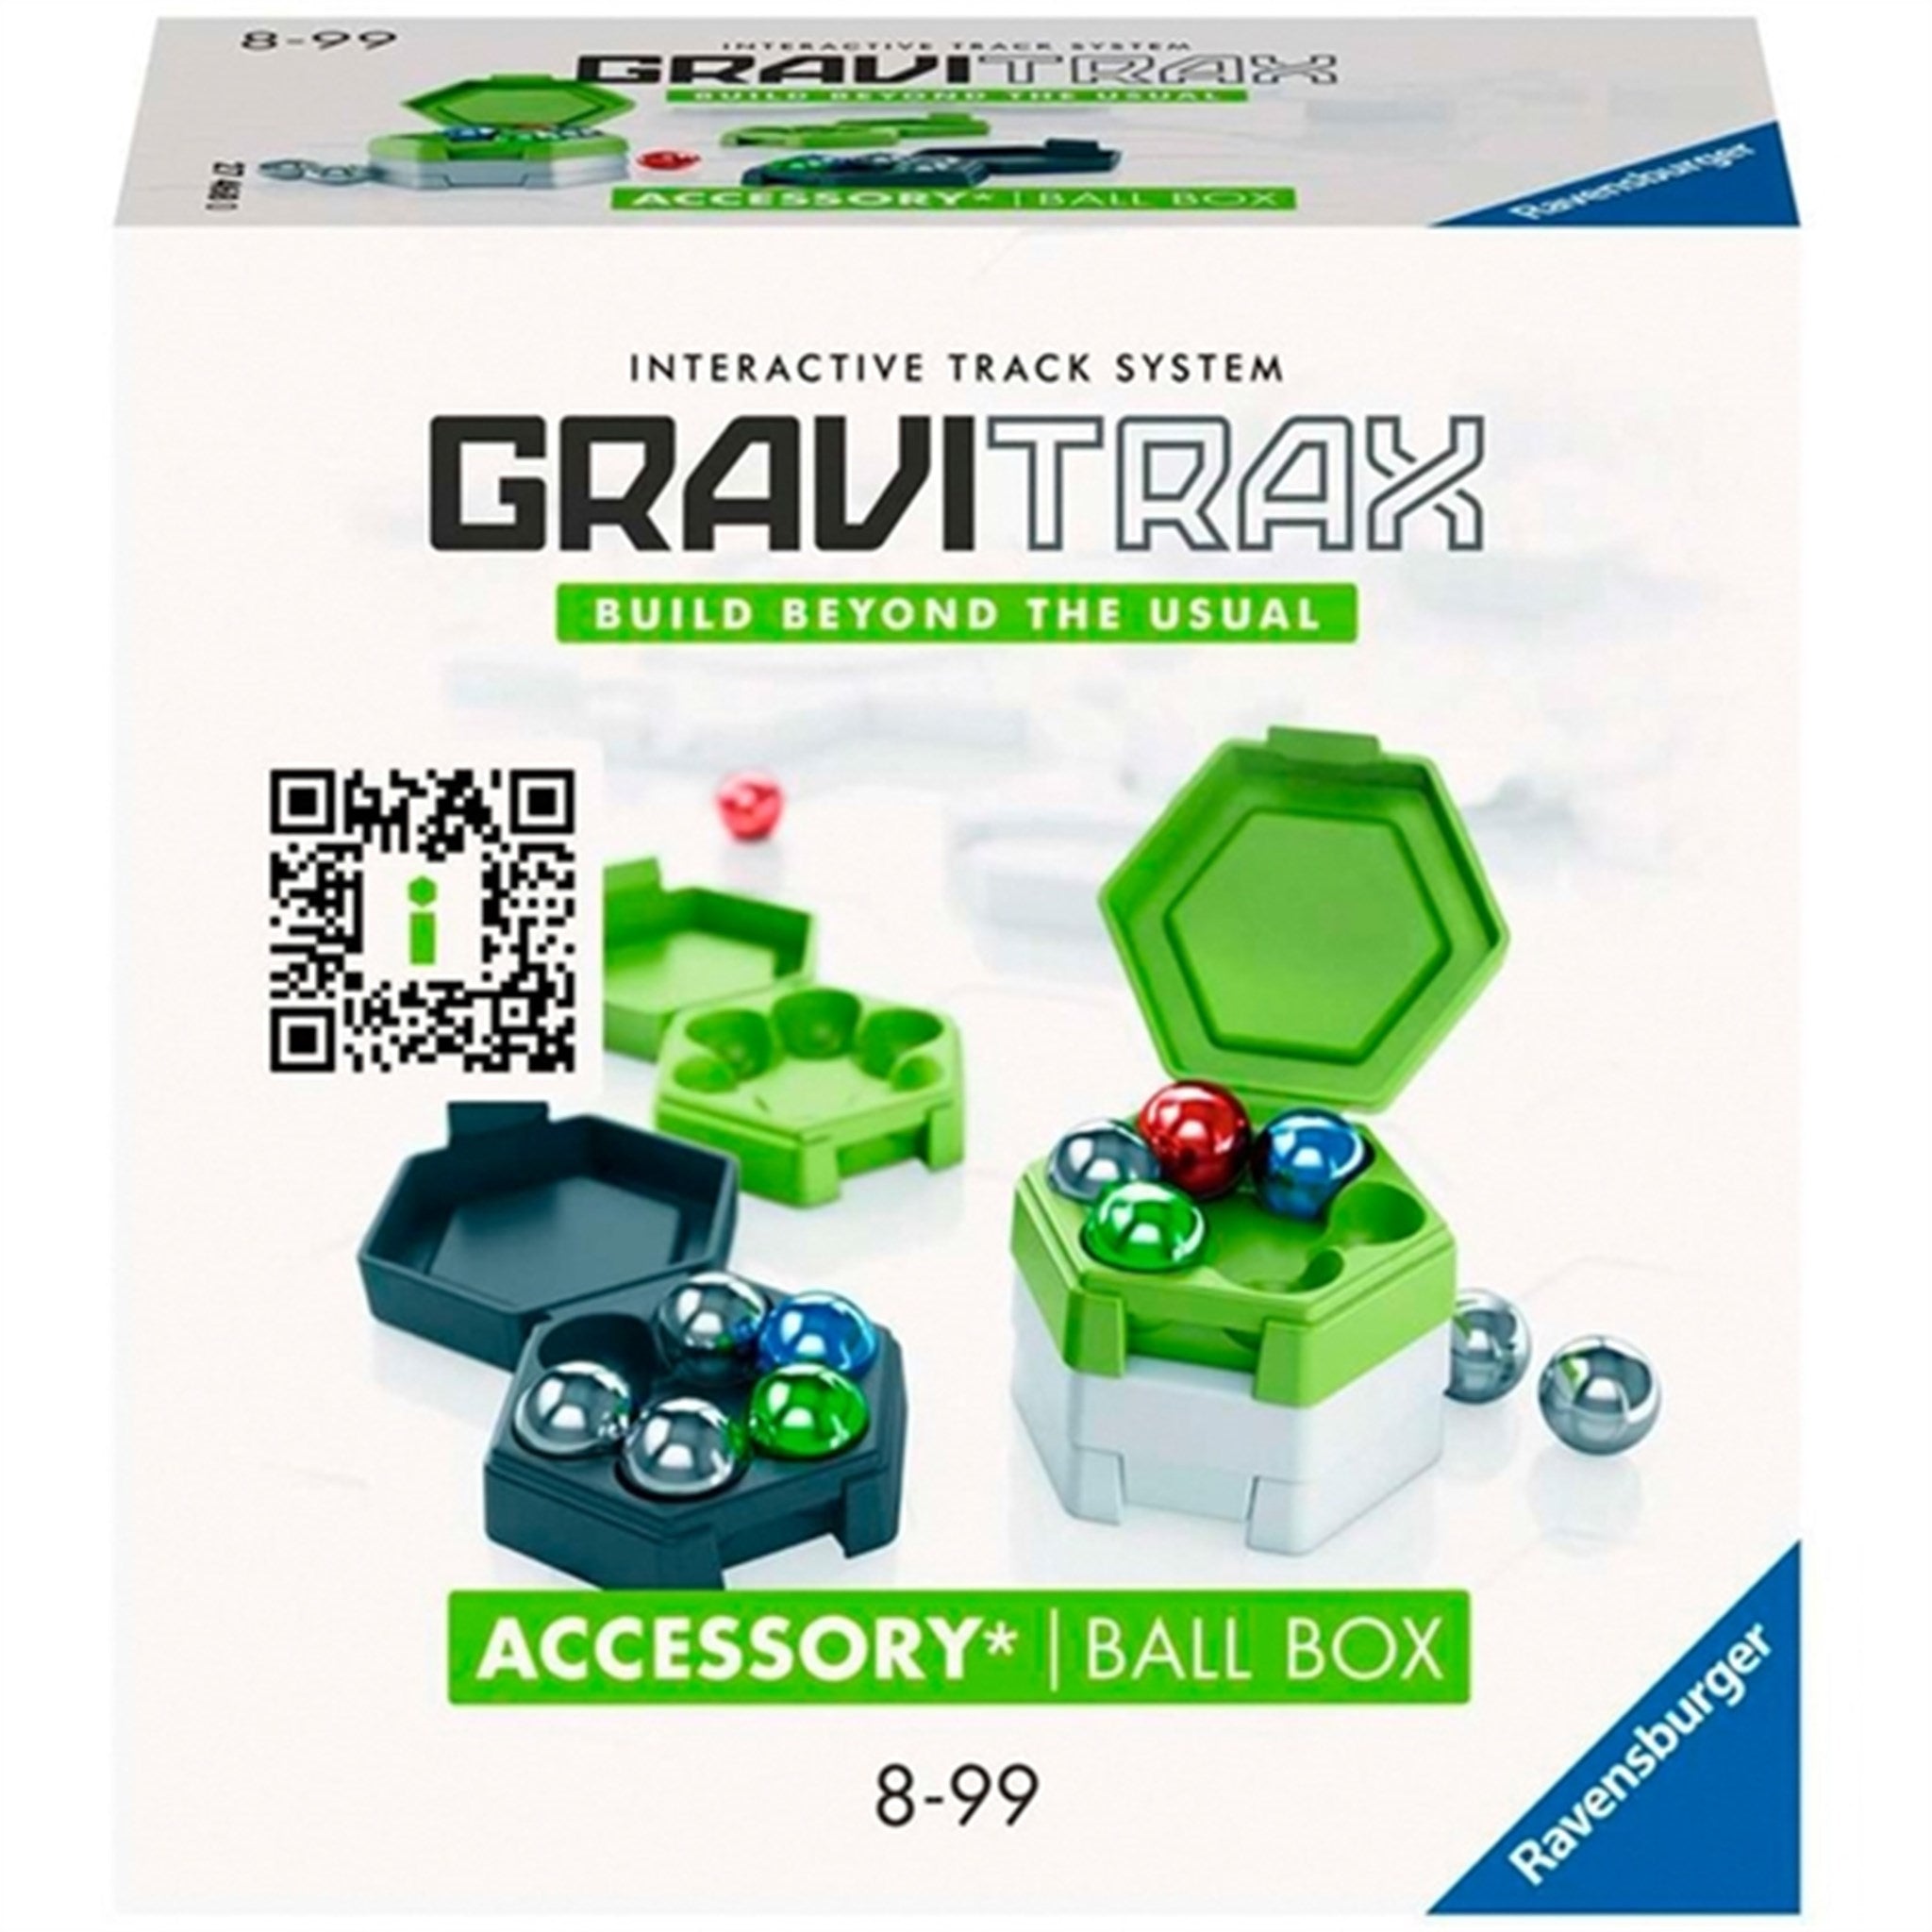 GraviTrax PRE ORDER Accessories Box